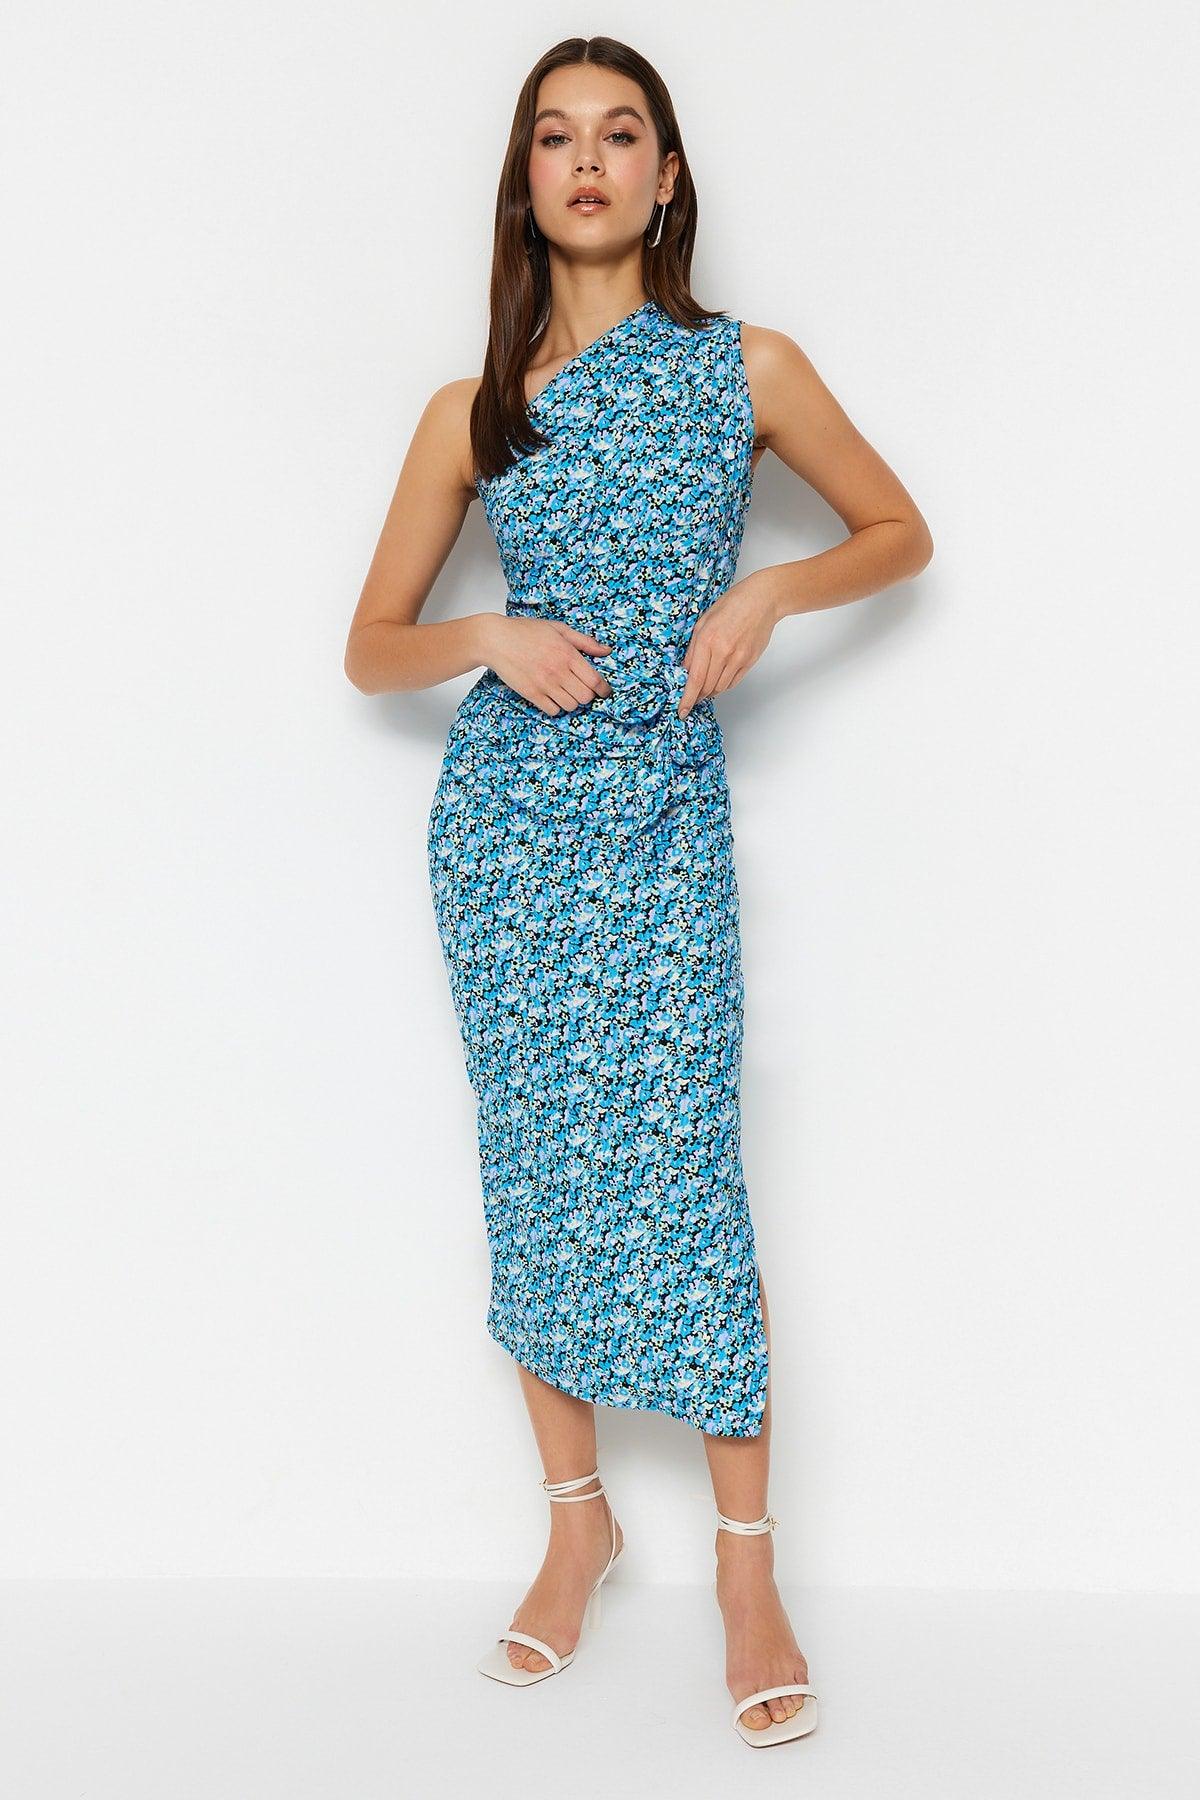 Blue Printed One-Shoulder Fitted One-Shoulder Knitted Dress - Swordslife